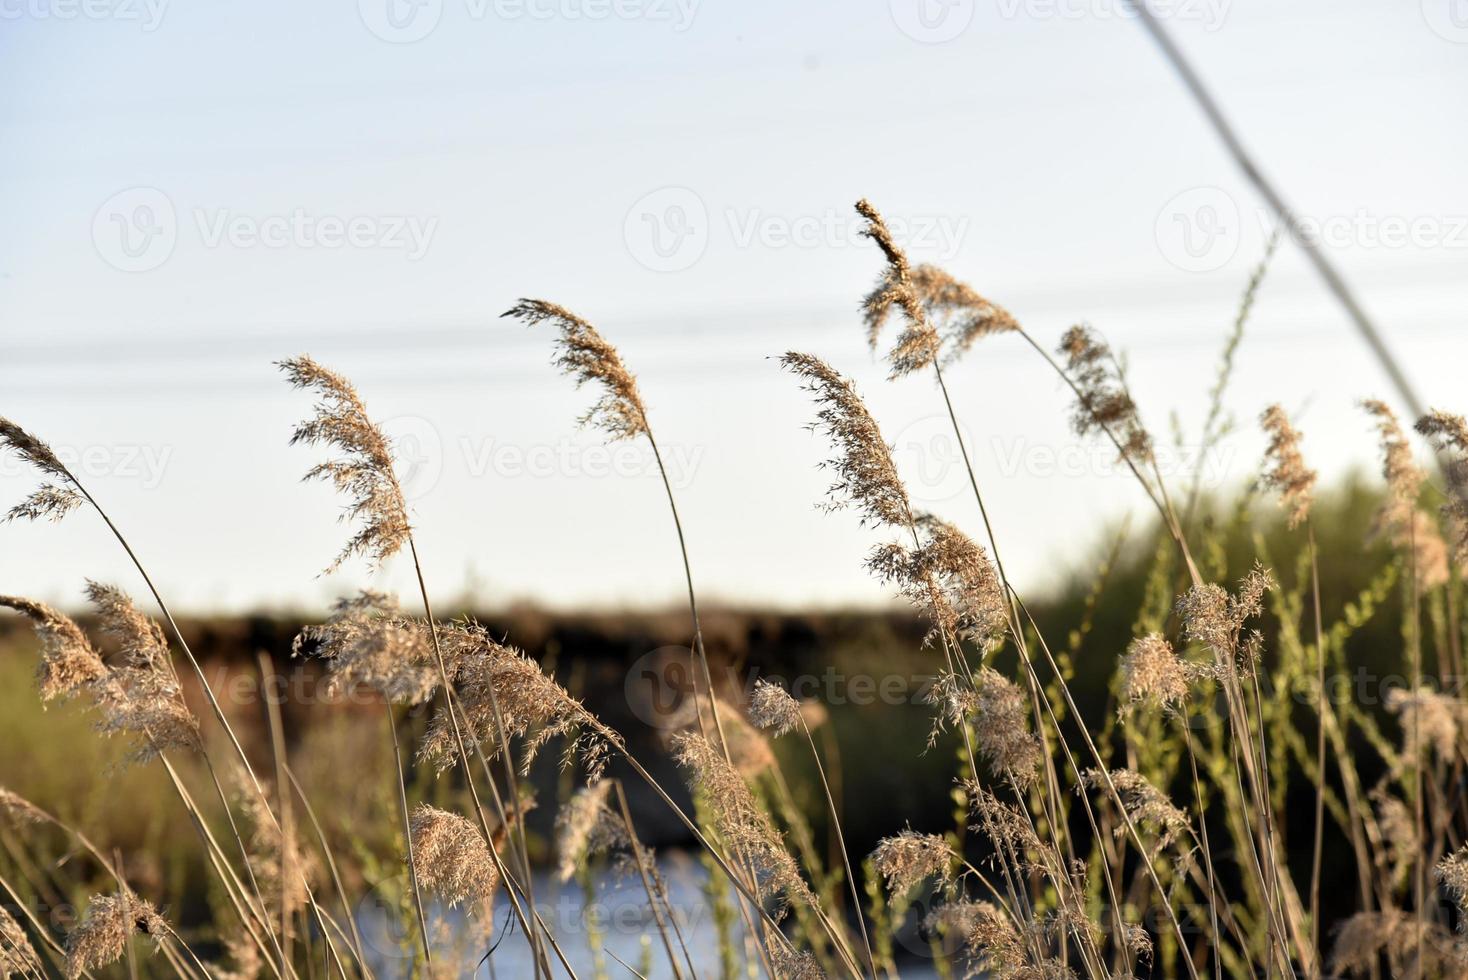 scirpus reed es un género de plantas acuáticas costeras perennes y anuales de la familia de las juncias foto